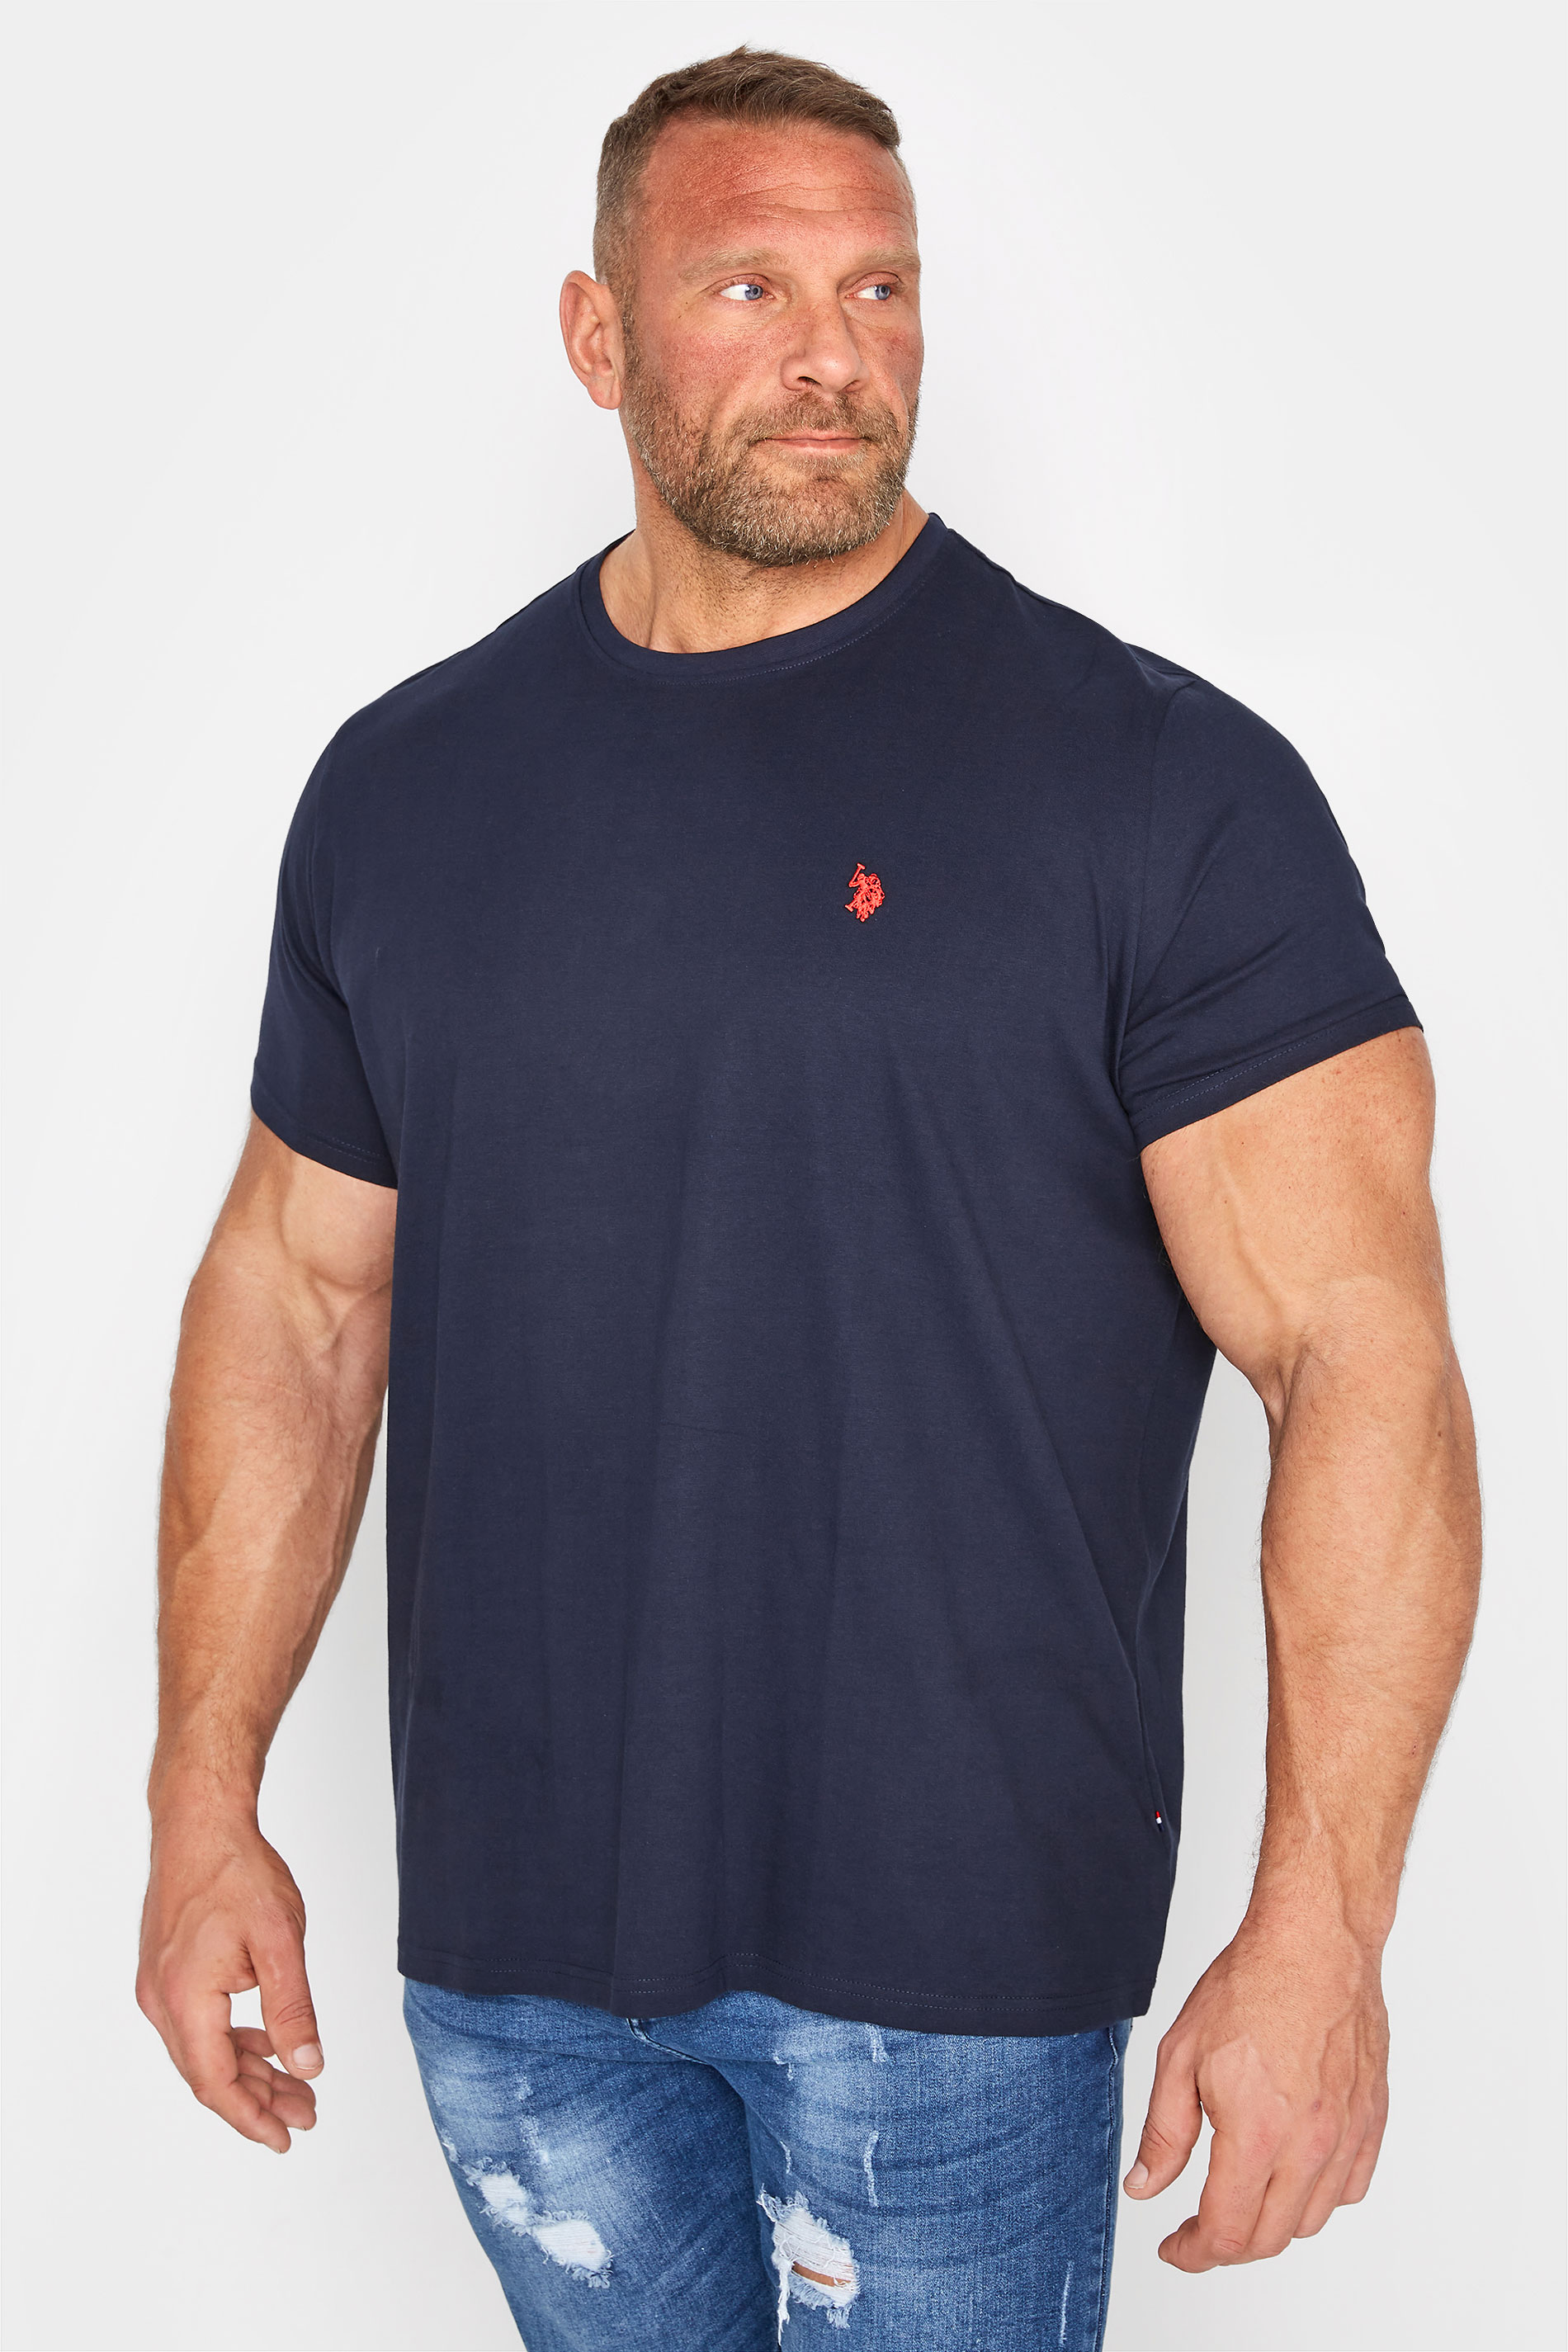 U.S. POLO ASSN. Big & Tall Navy Blue Core T-Shirt_A.jpg